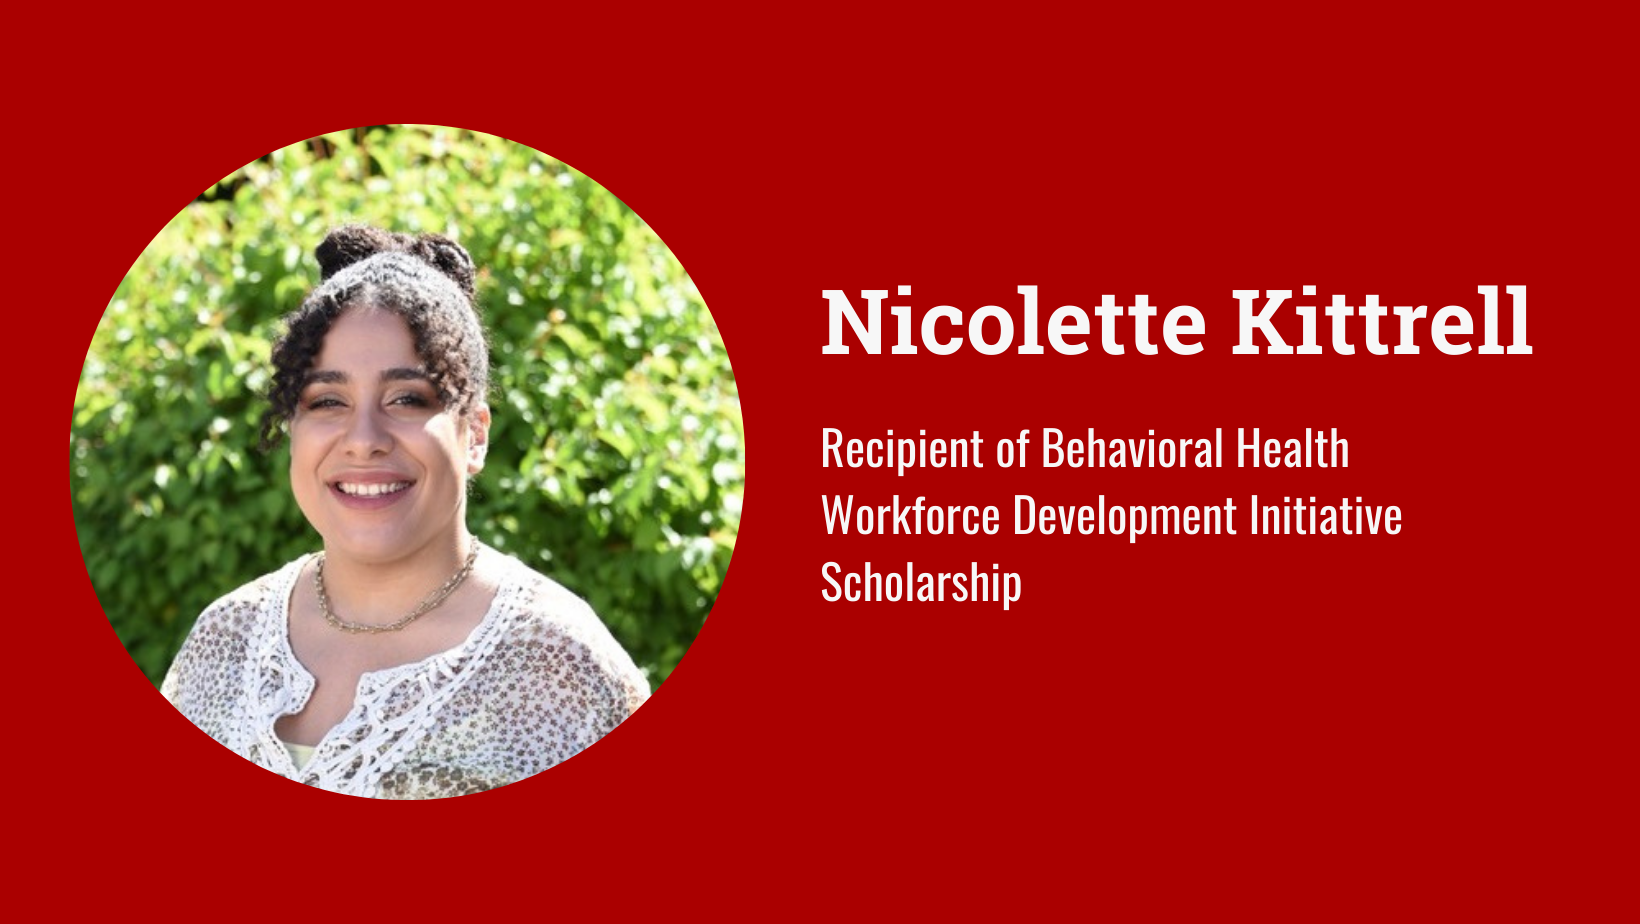 Nicolette Kittrell: Recipient of Behavioral Health Workforce Development Initiative Scholarship